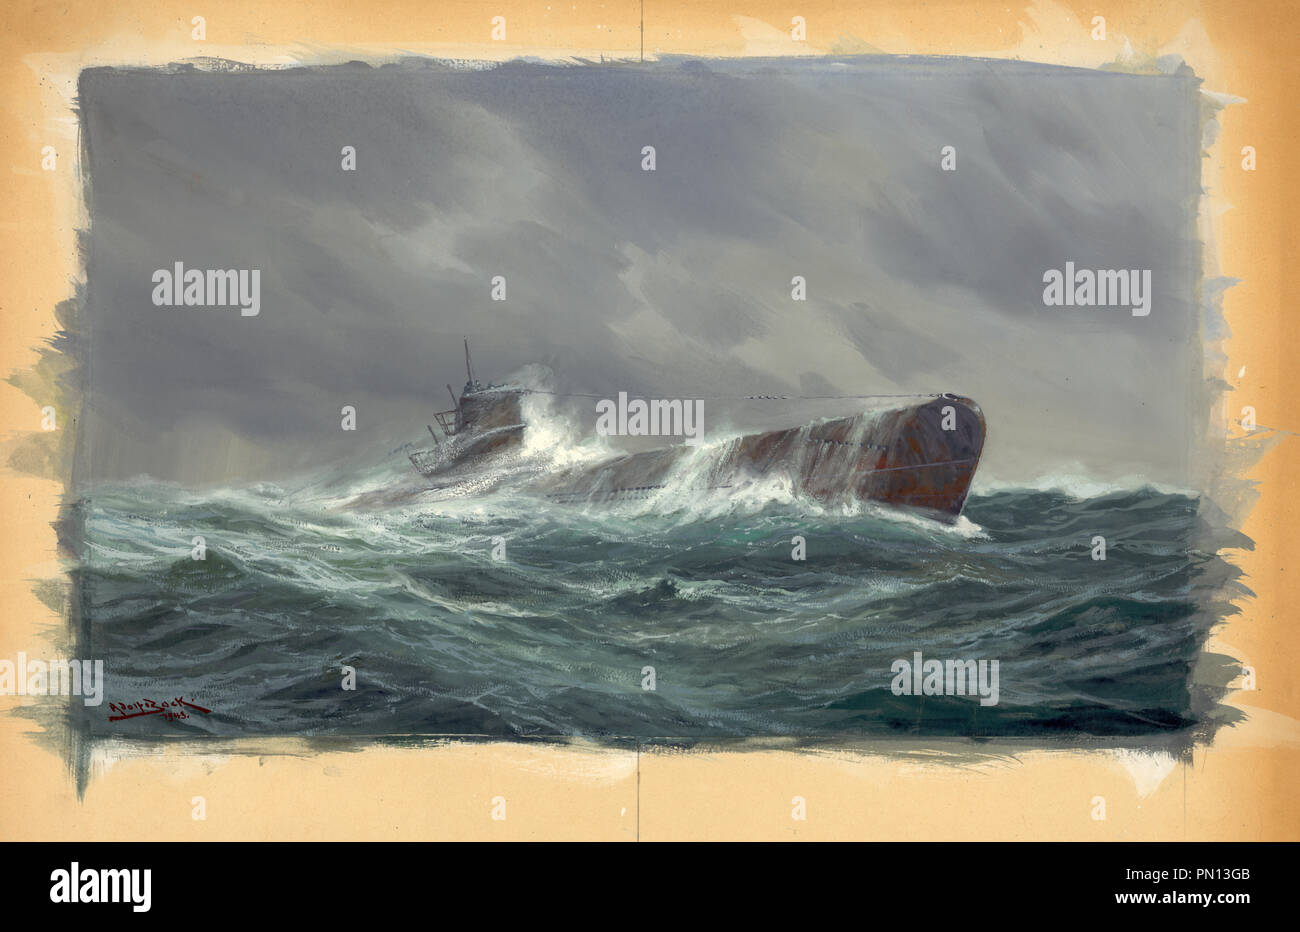 Sous-marin U-boot en mer. Dessin montre un sous-marin maritime en mer durant la Seconde Guerre mondiale Banque D'Images